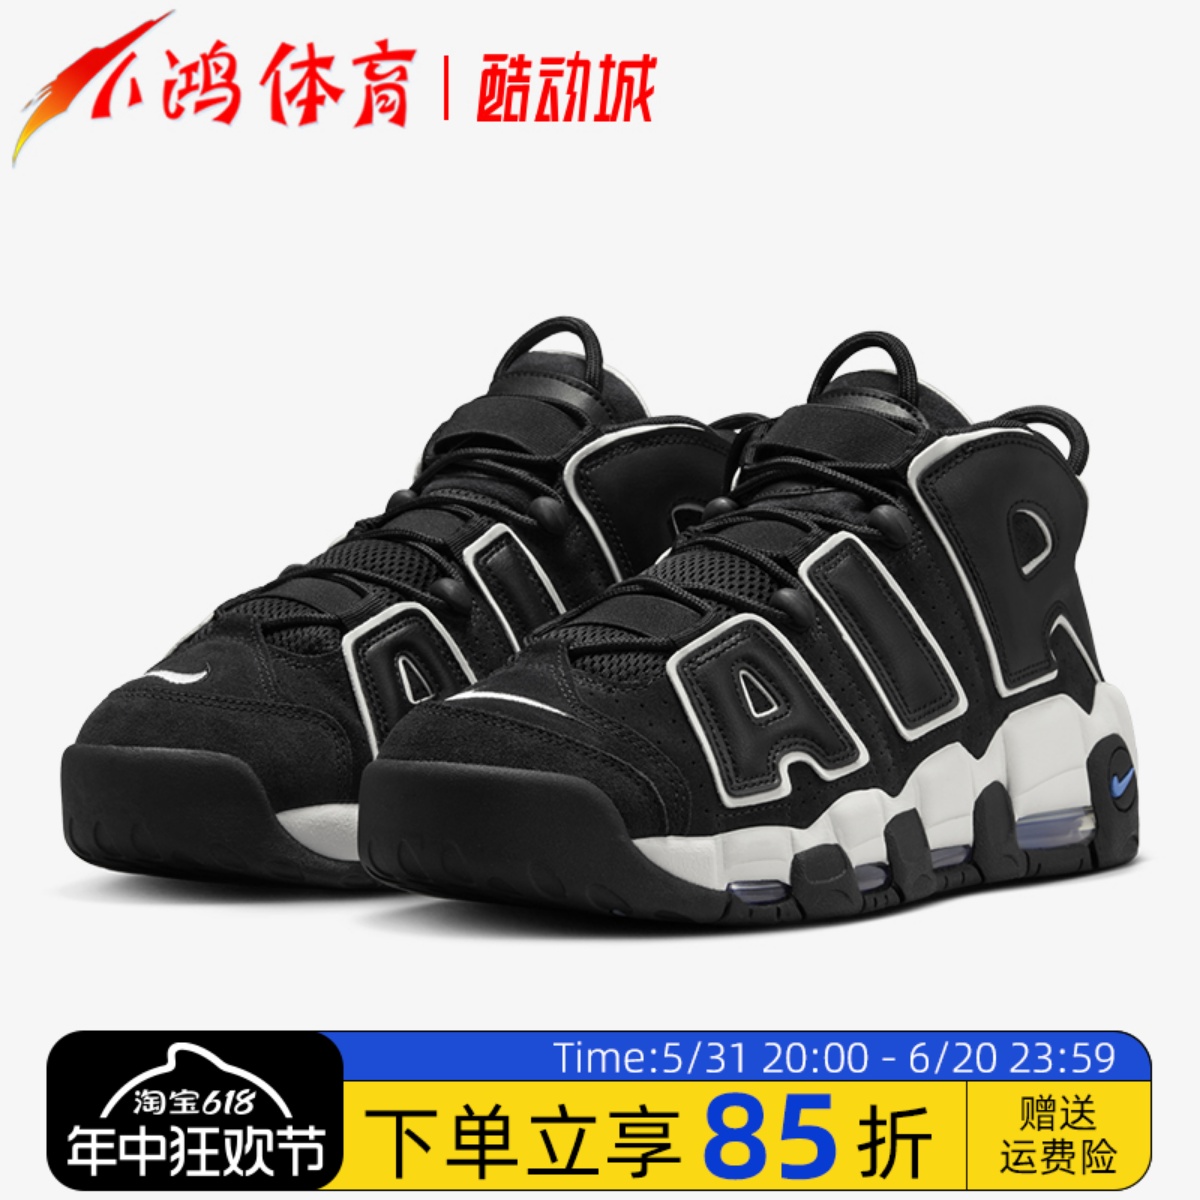 小鸿体育Nike Air More Uptempo皮蓬大Air 黑白 篮球鞋FB8883-001